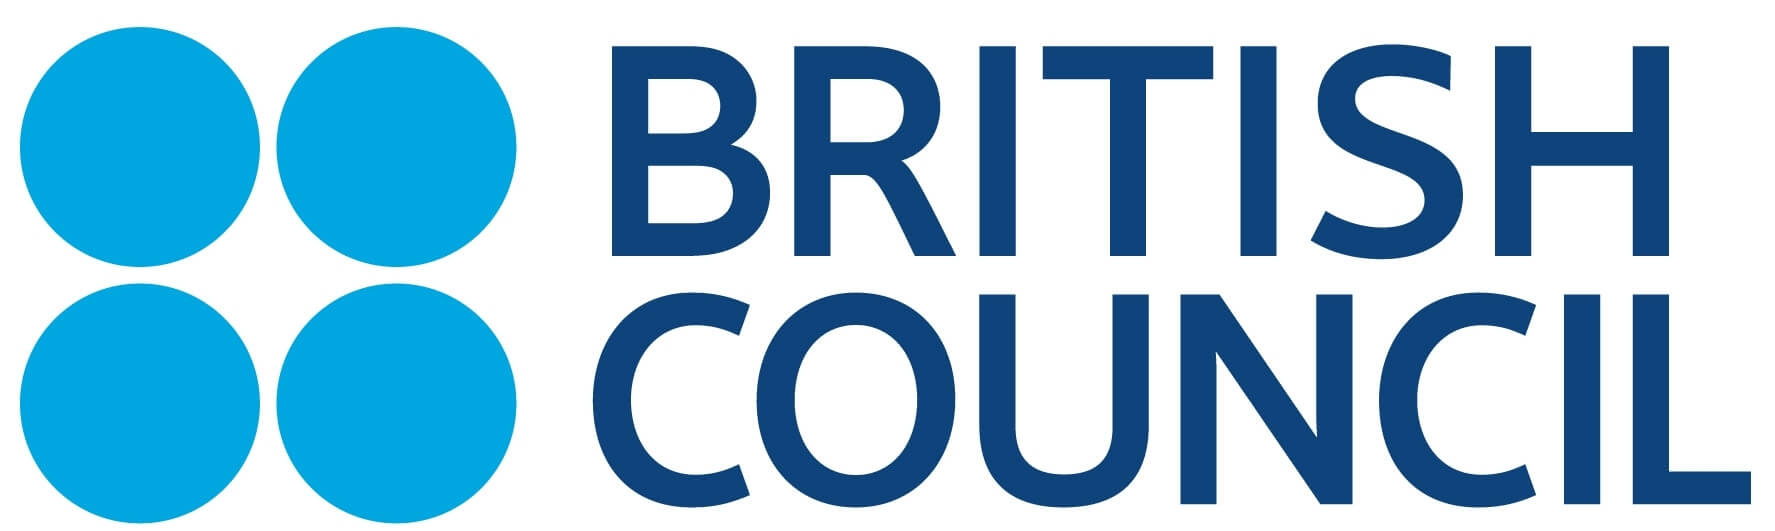 درباره ی سازمان British Council